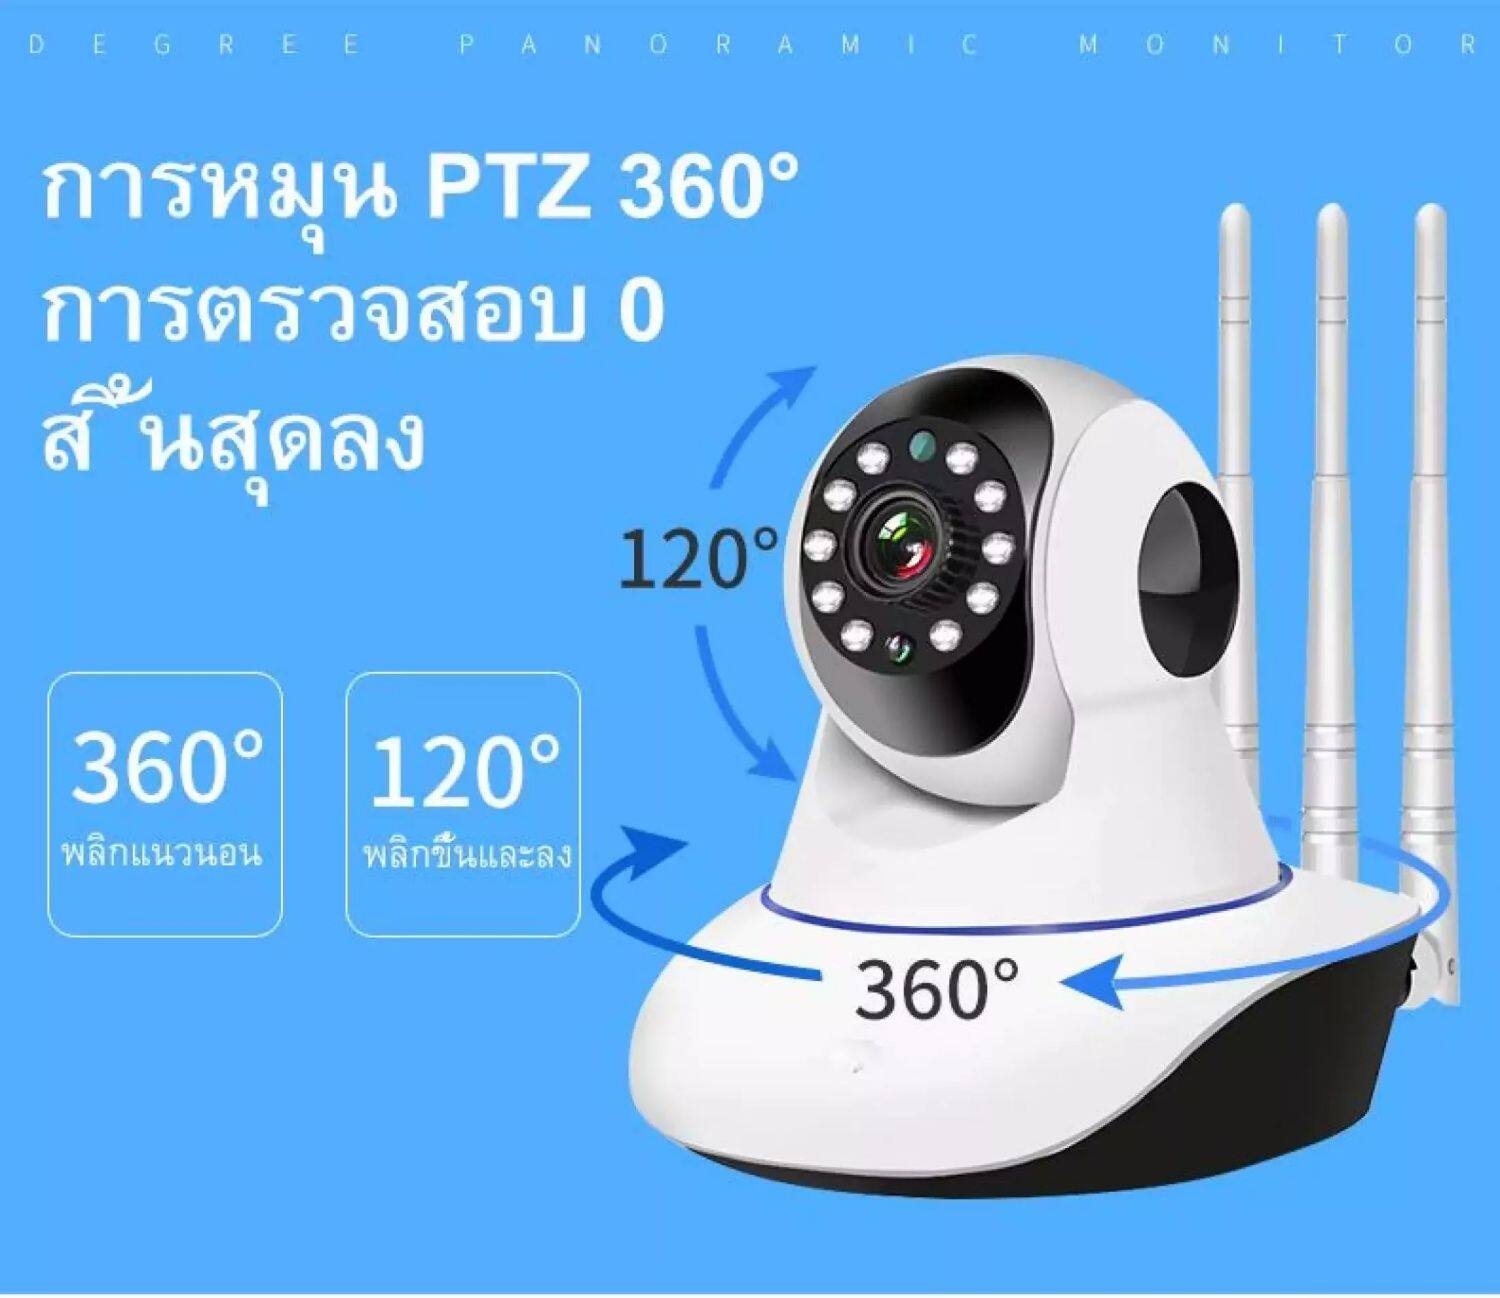 ภาพประกอบของ กล้องวงจรปิด Xiaomi IP Camera HD 1080P การรักษาความปลอดภัยภายในบ้าน WiFi กล้องไร้สาย night vision two-way audio กันน้ํา 360°mini camera Motion Detection Baby Monitor CCTV Sec Camera with Alarm